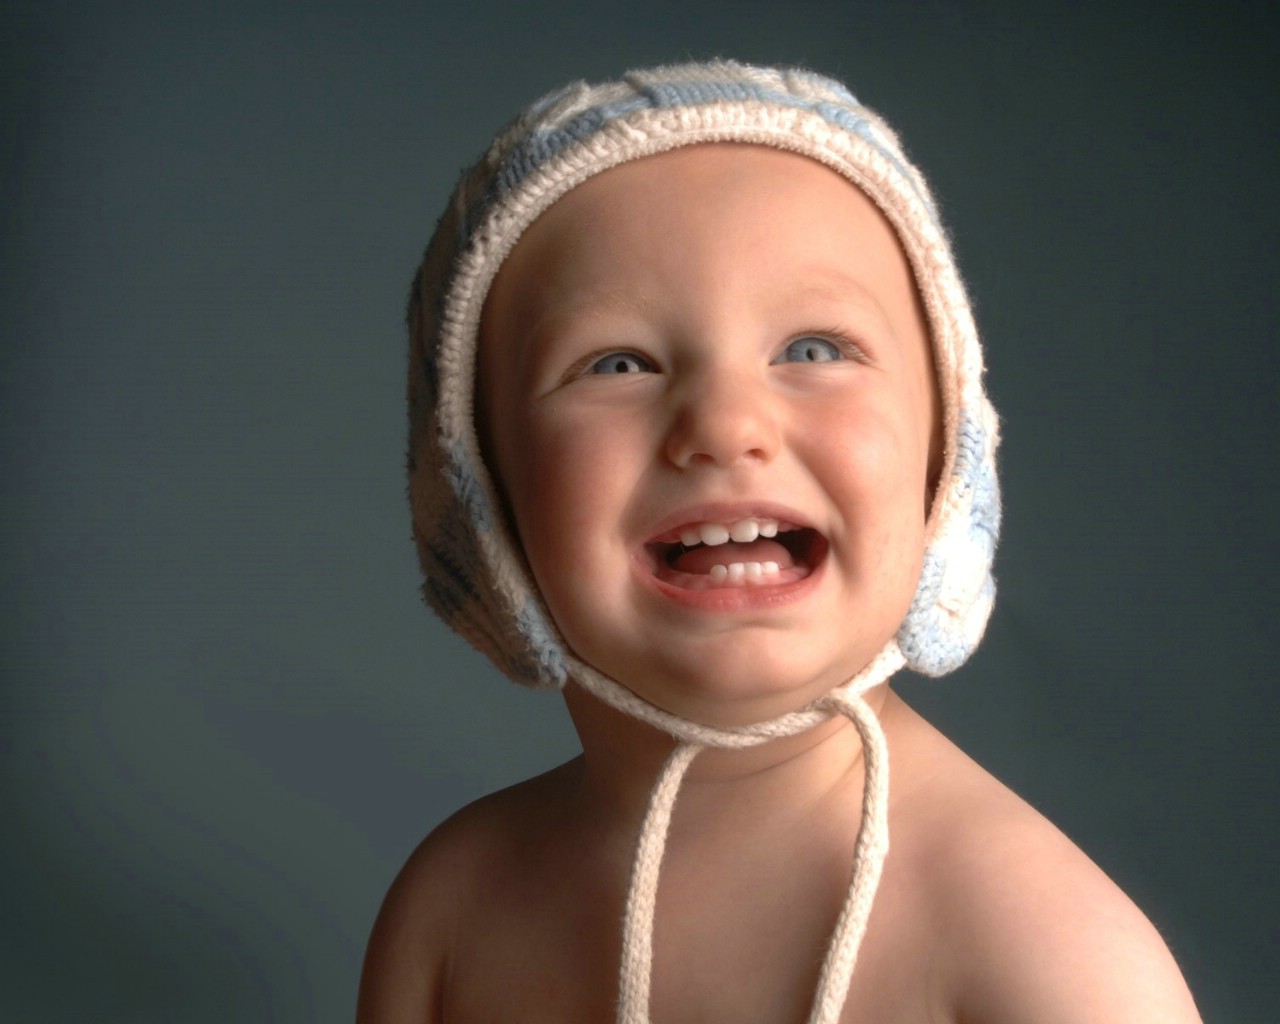 壁纸1280×1024可爱婴儿摄影 童帽小宝宝图片